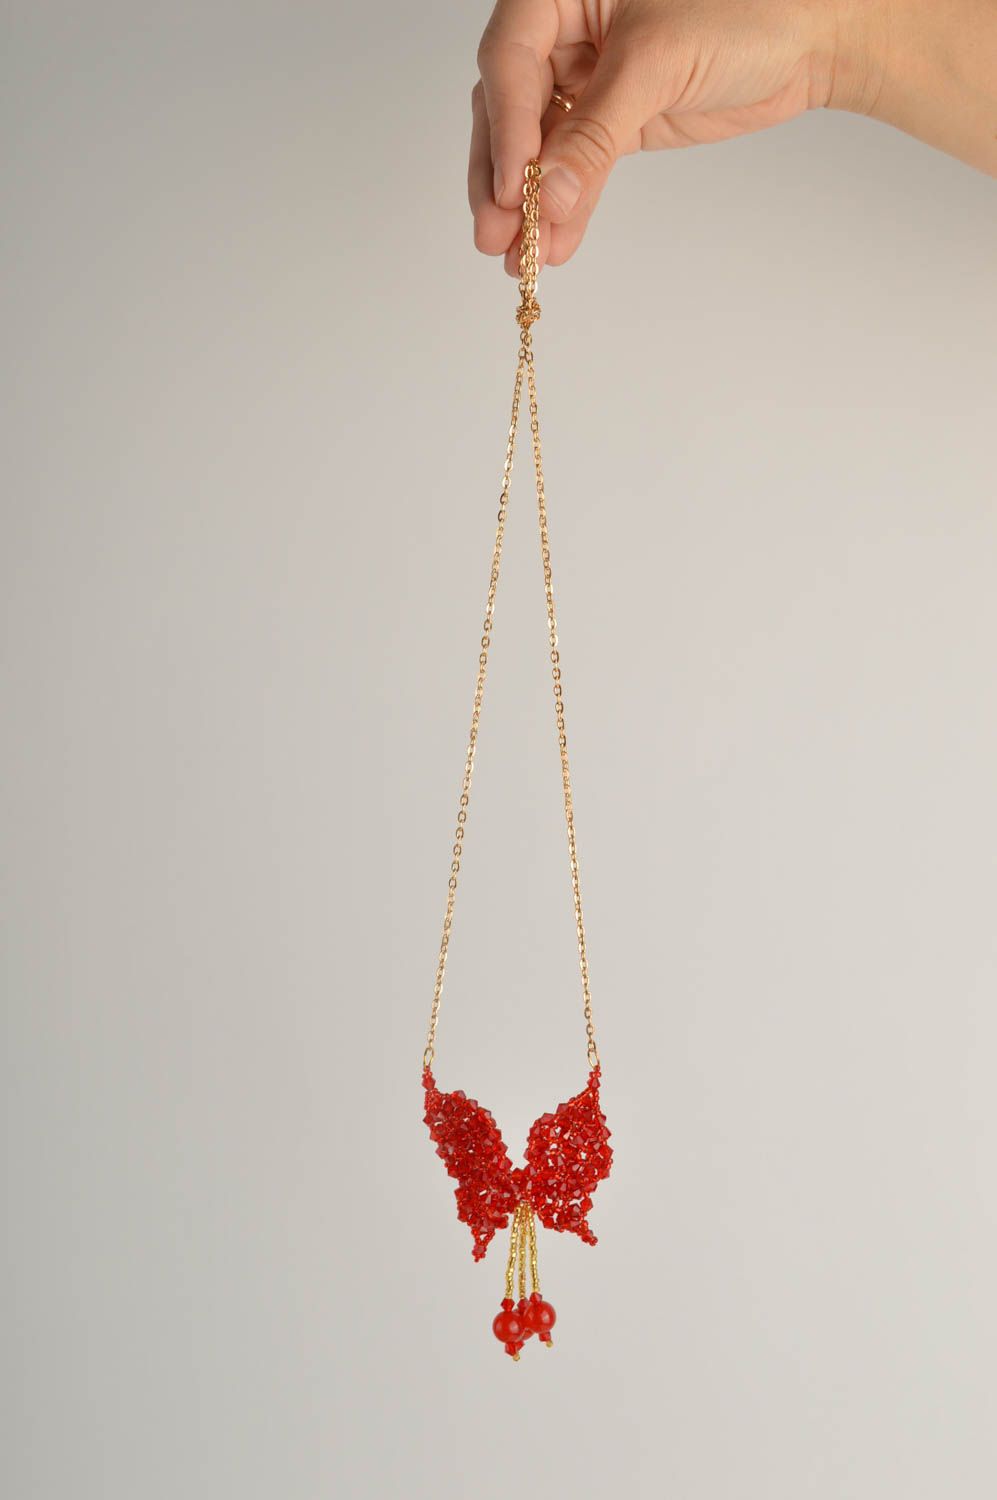 Кулон ручной работы украшение на шею украшение из бусин красная подвеска фото 2